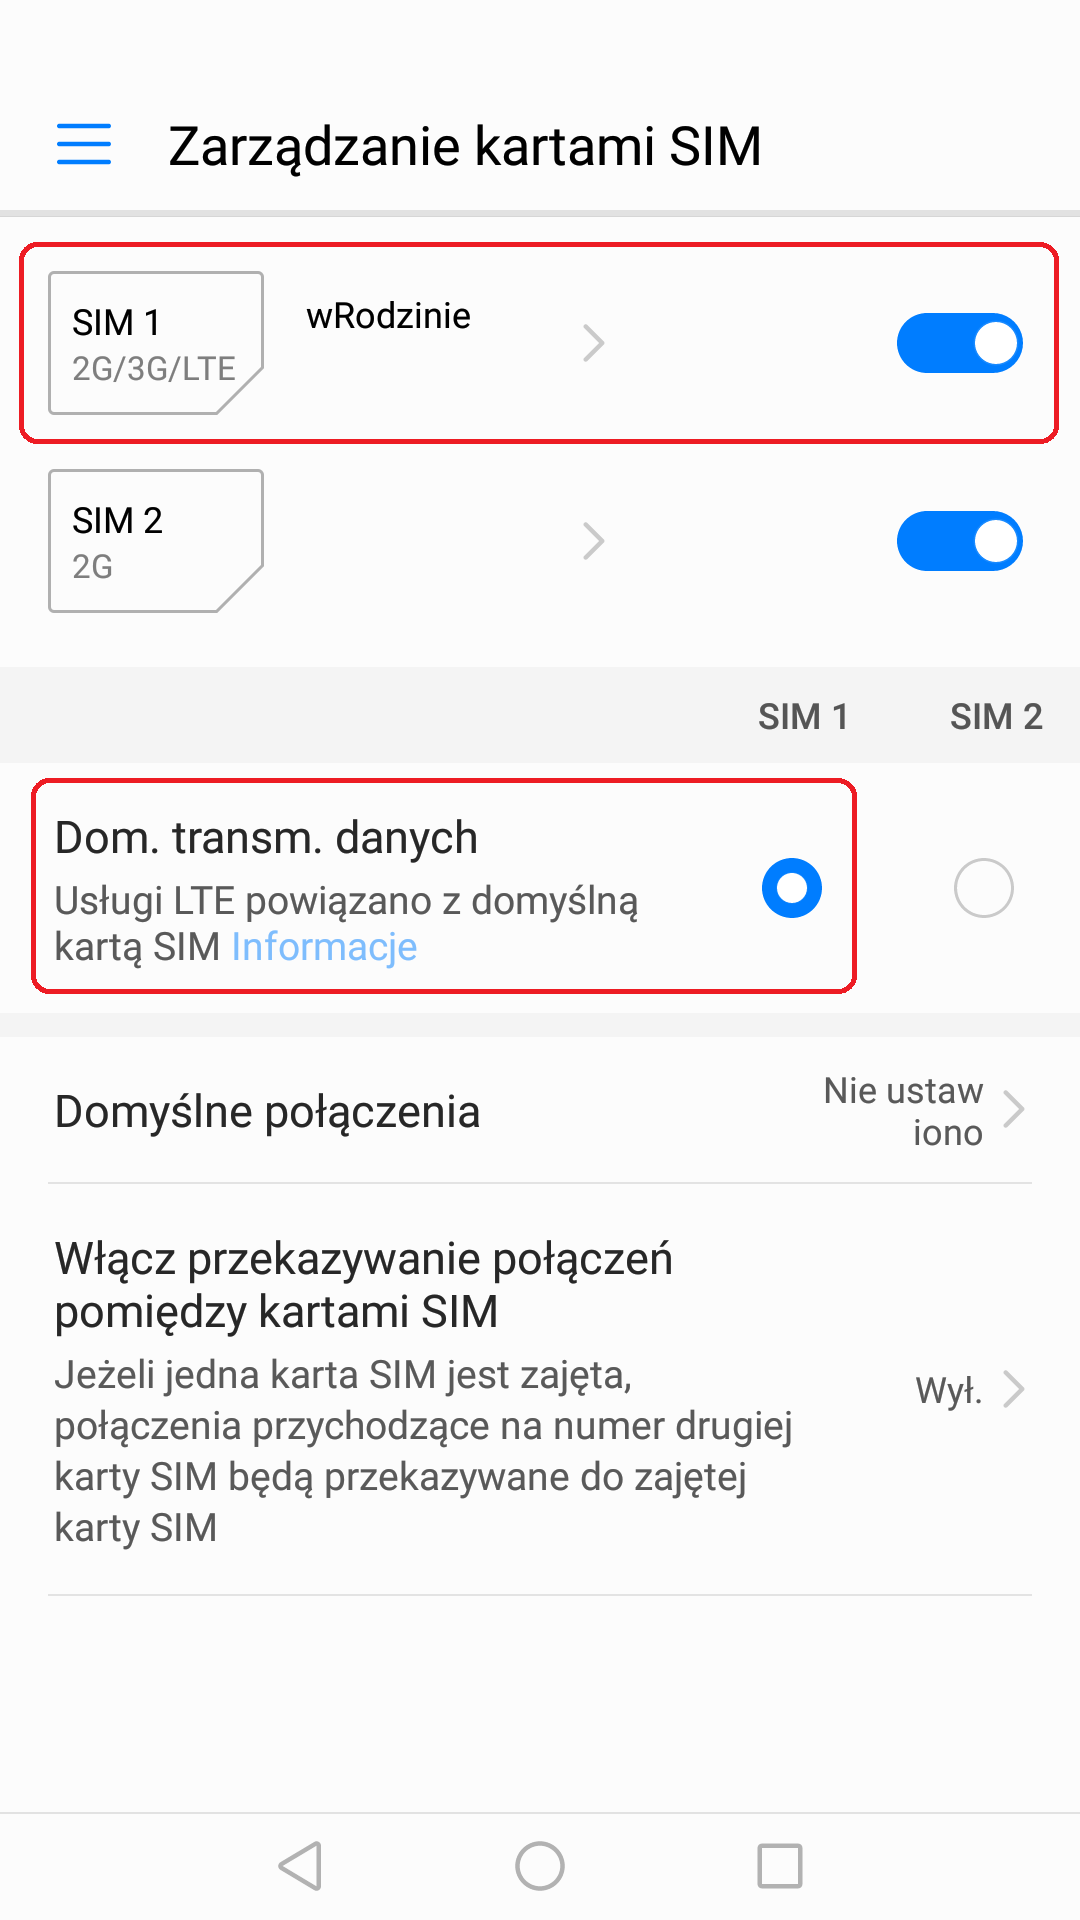 W zakładce Zarządzanie kartami SIM powinieneś mieć zaznaczoną aktywną pozycję SIM 1 wRodzinie oraz zaznaczoną aktywną pozycję SIM 1 przy Dom. transm. danych